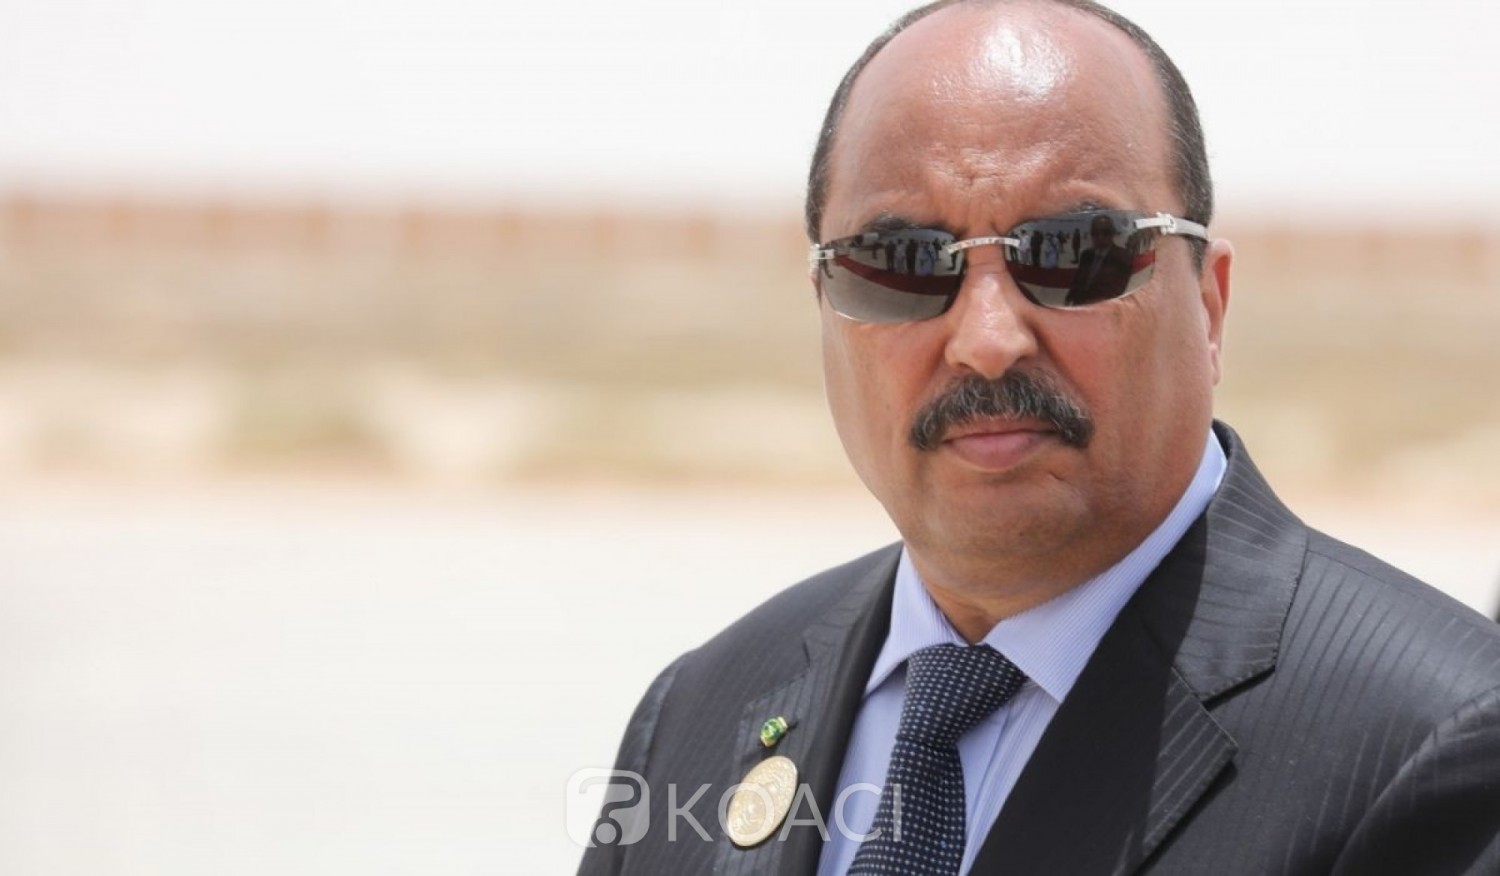 Mauritanie : Soupçonné de « corruption », Mohamed Ould Abdel Aziz interdit de quitter Nouakchott